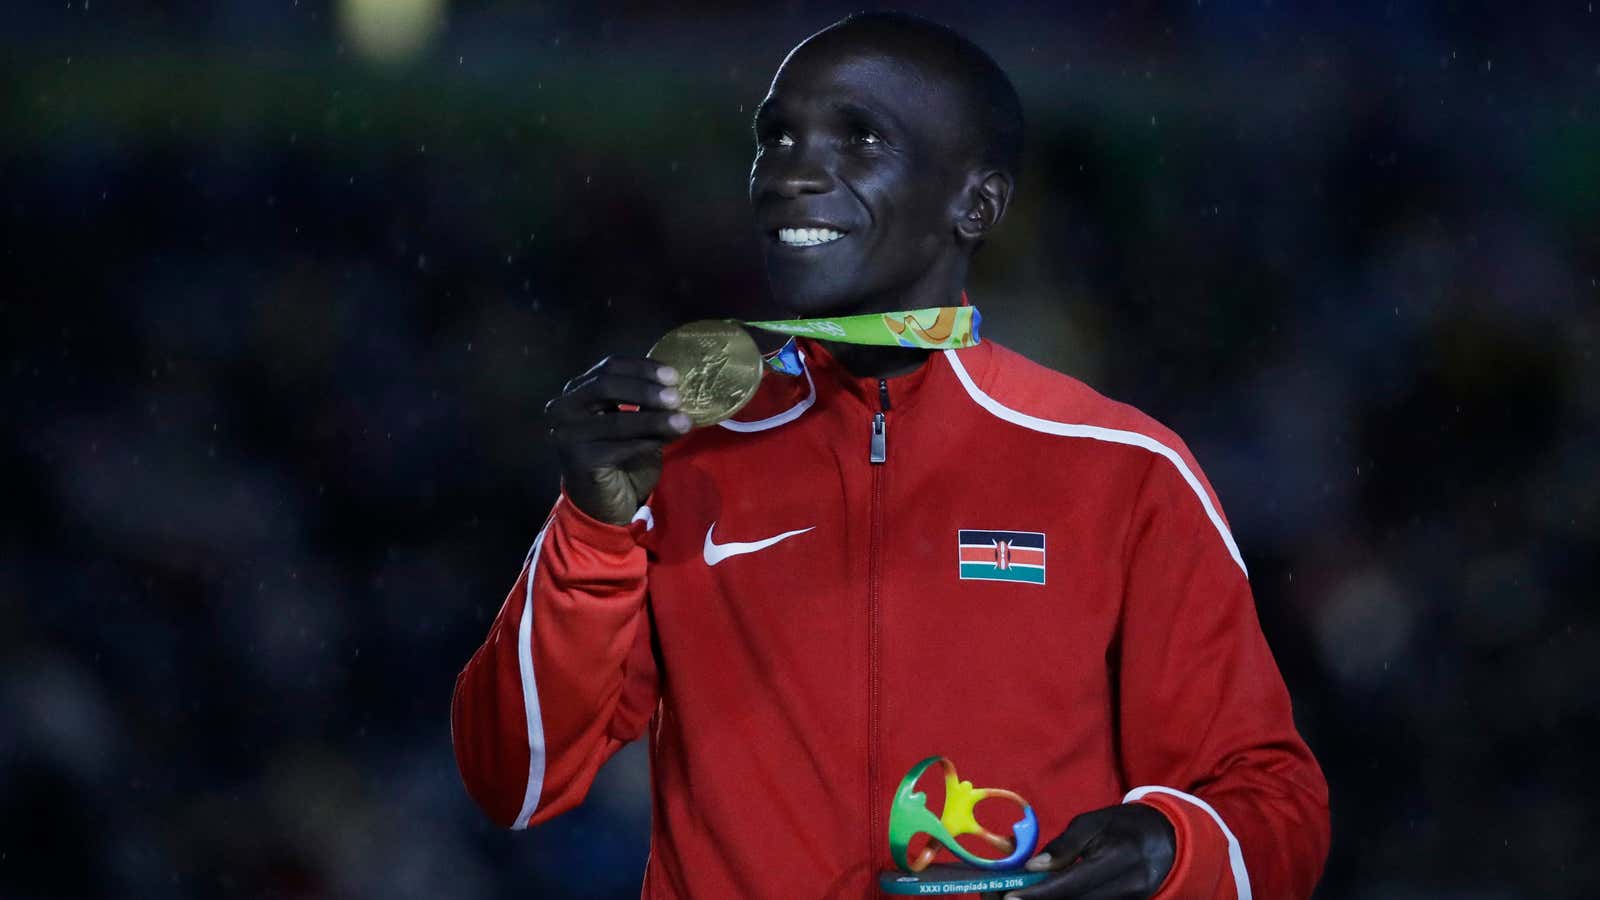 Kenya’s gold medal winner Eliud Kipchoge.